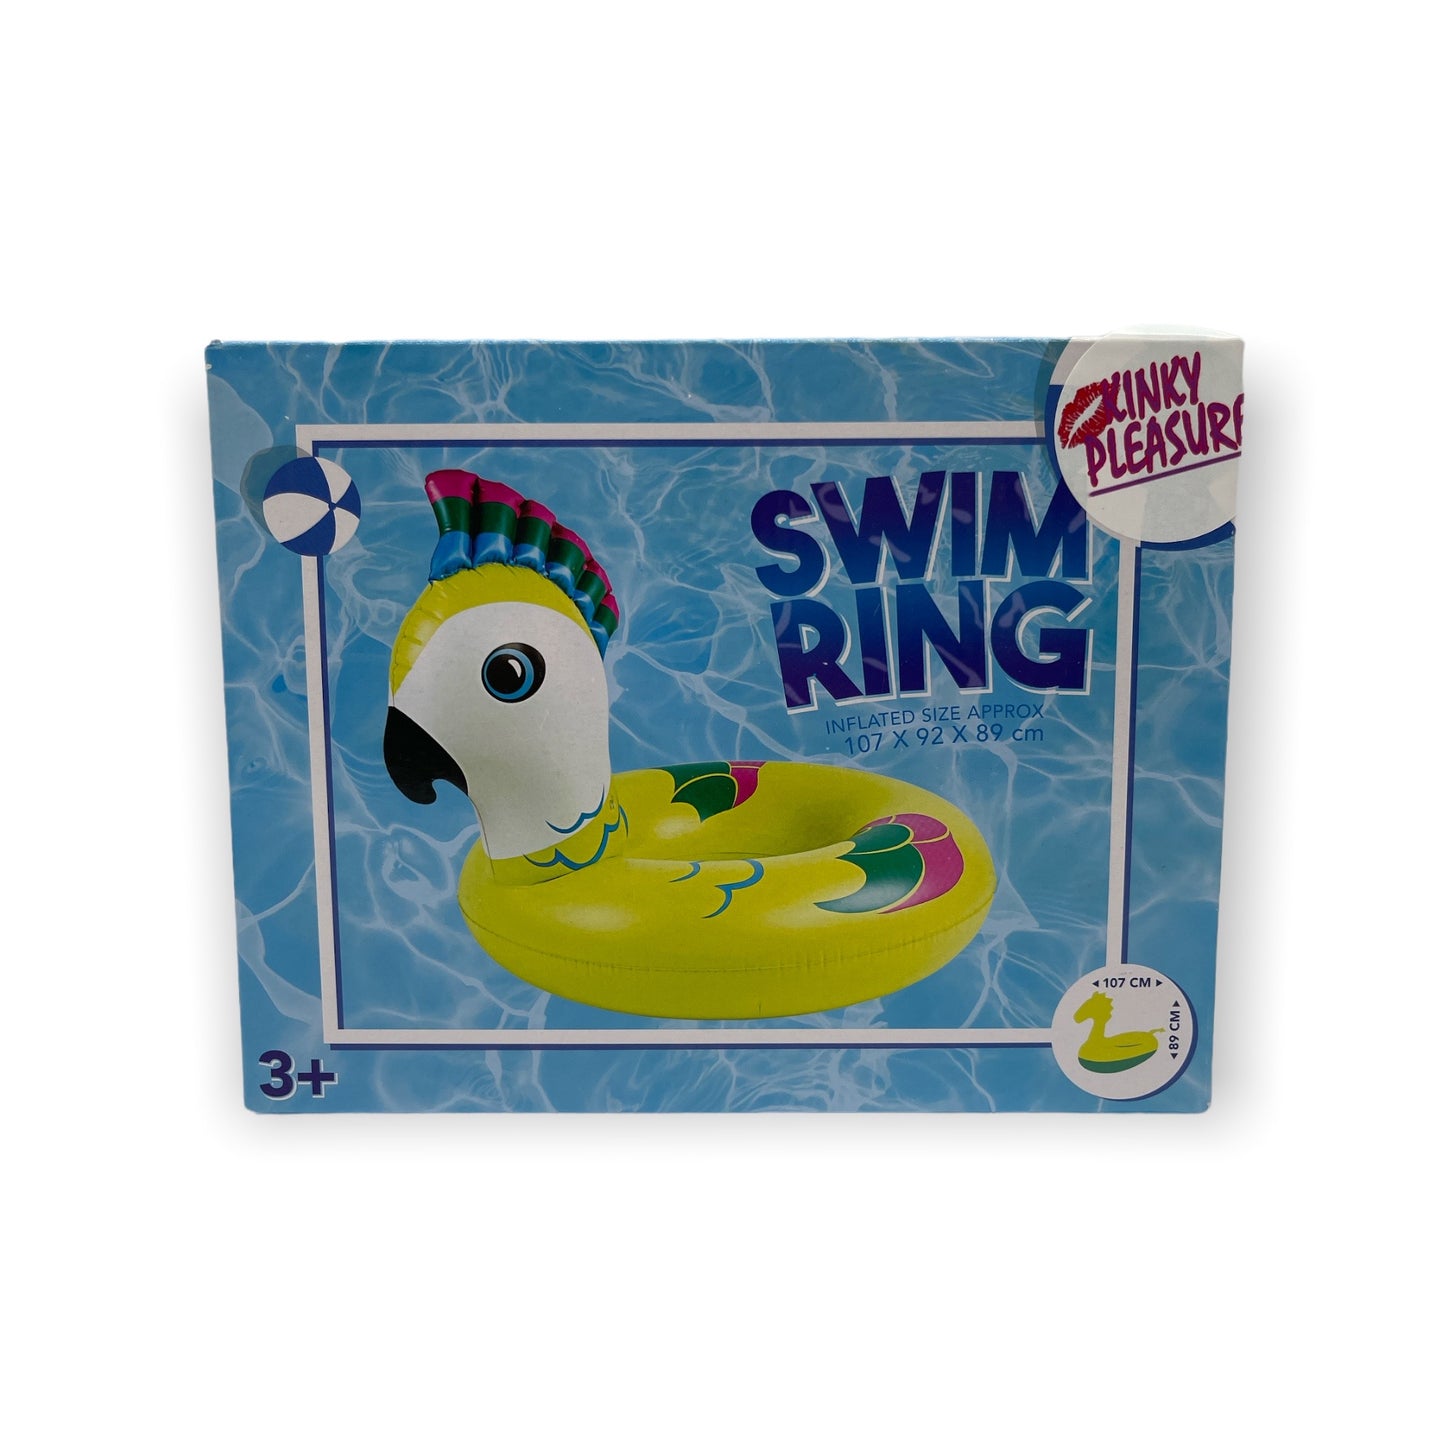 Opblaasbare Zwembanden in Verschillende Kinky Pleasure Designs - Perfect voor een Zomerse Dag!"